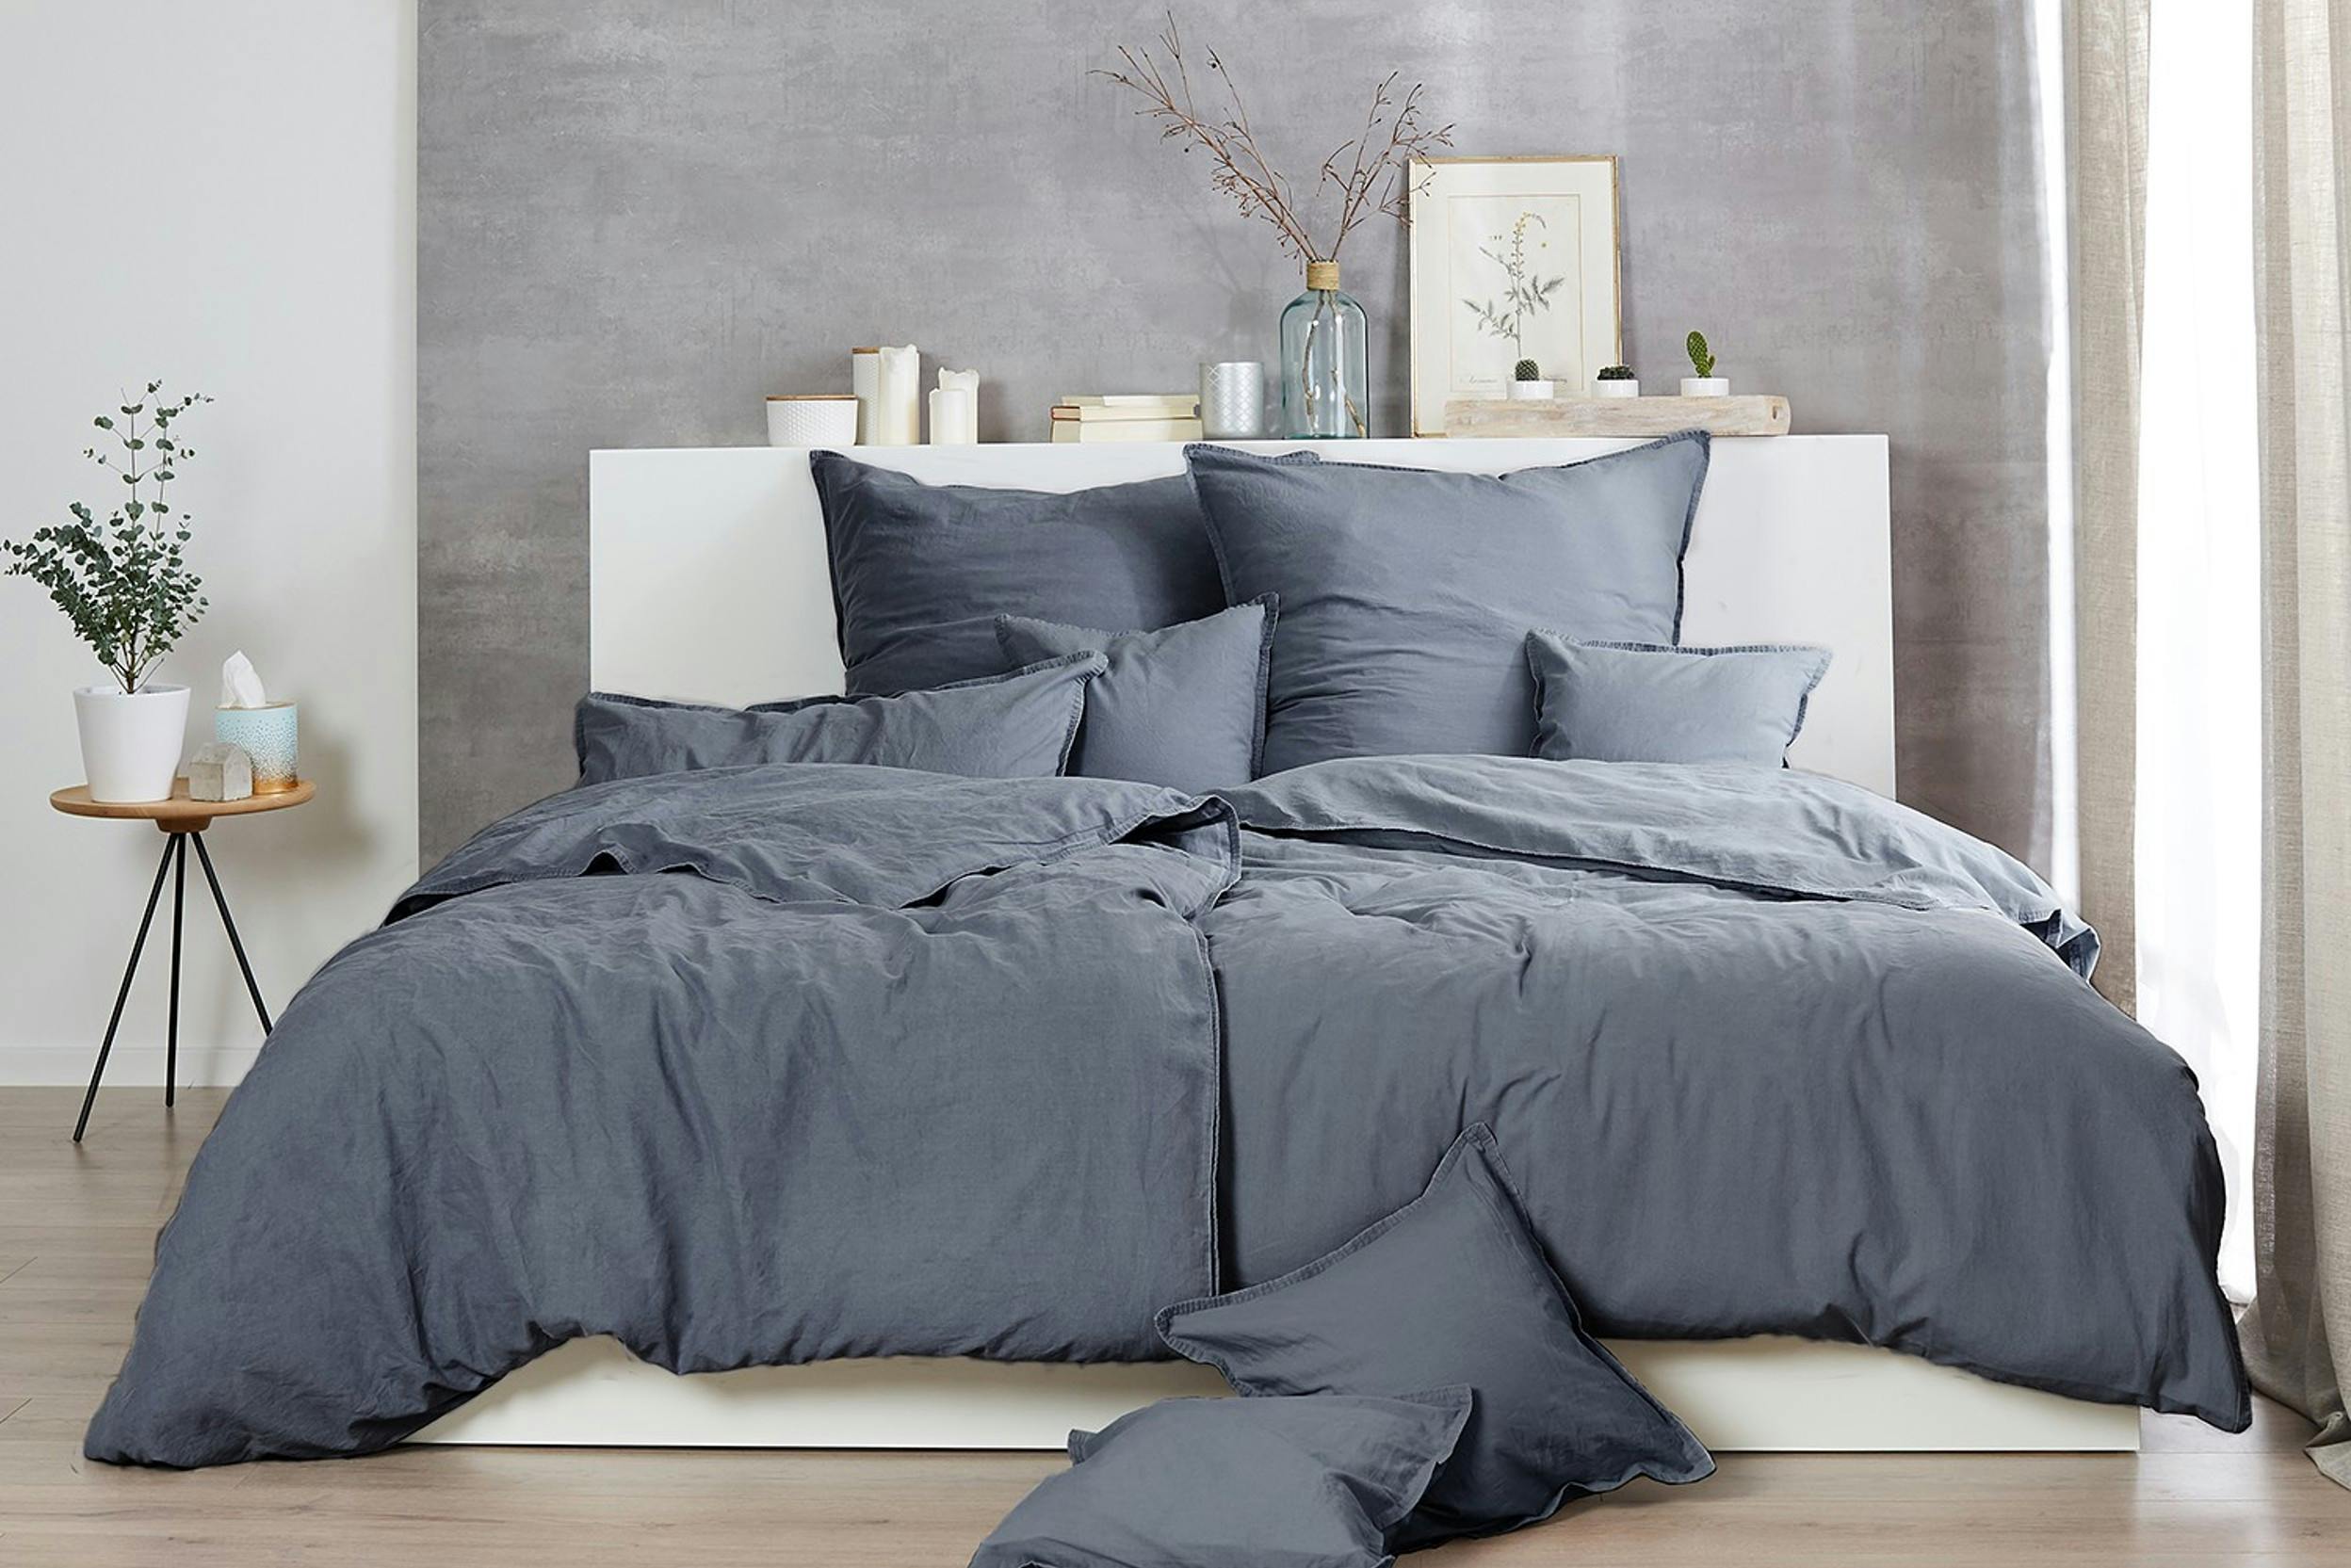 Geräumiges Bett mit grauer Baumwollbettwäsche vor einer grauen betonartigen Wand